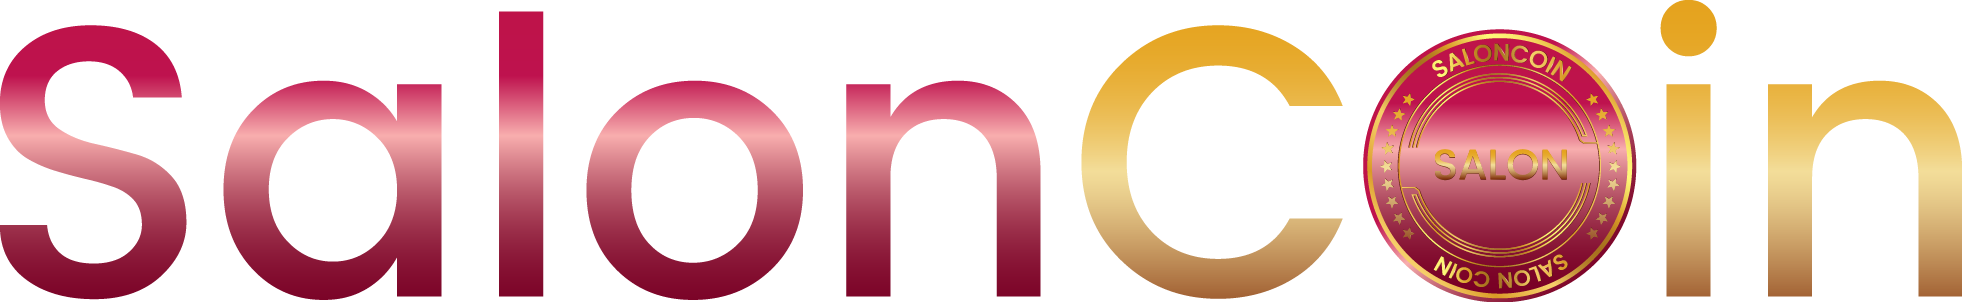 saloncoin logo